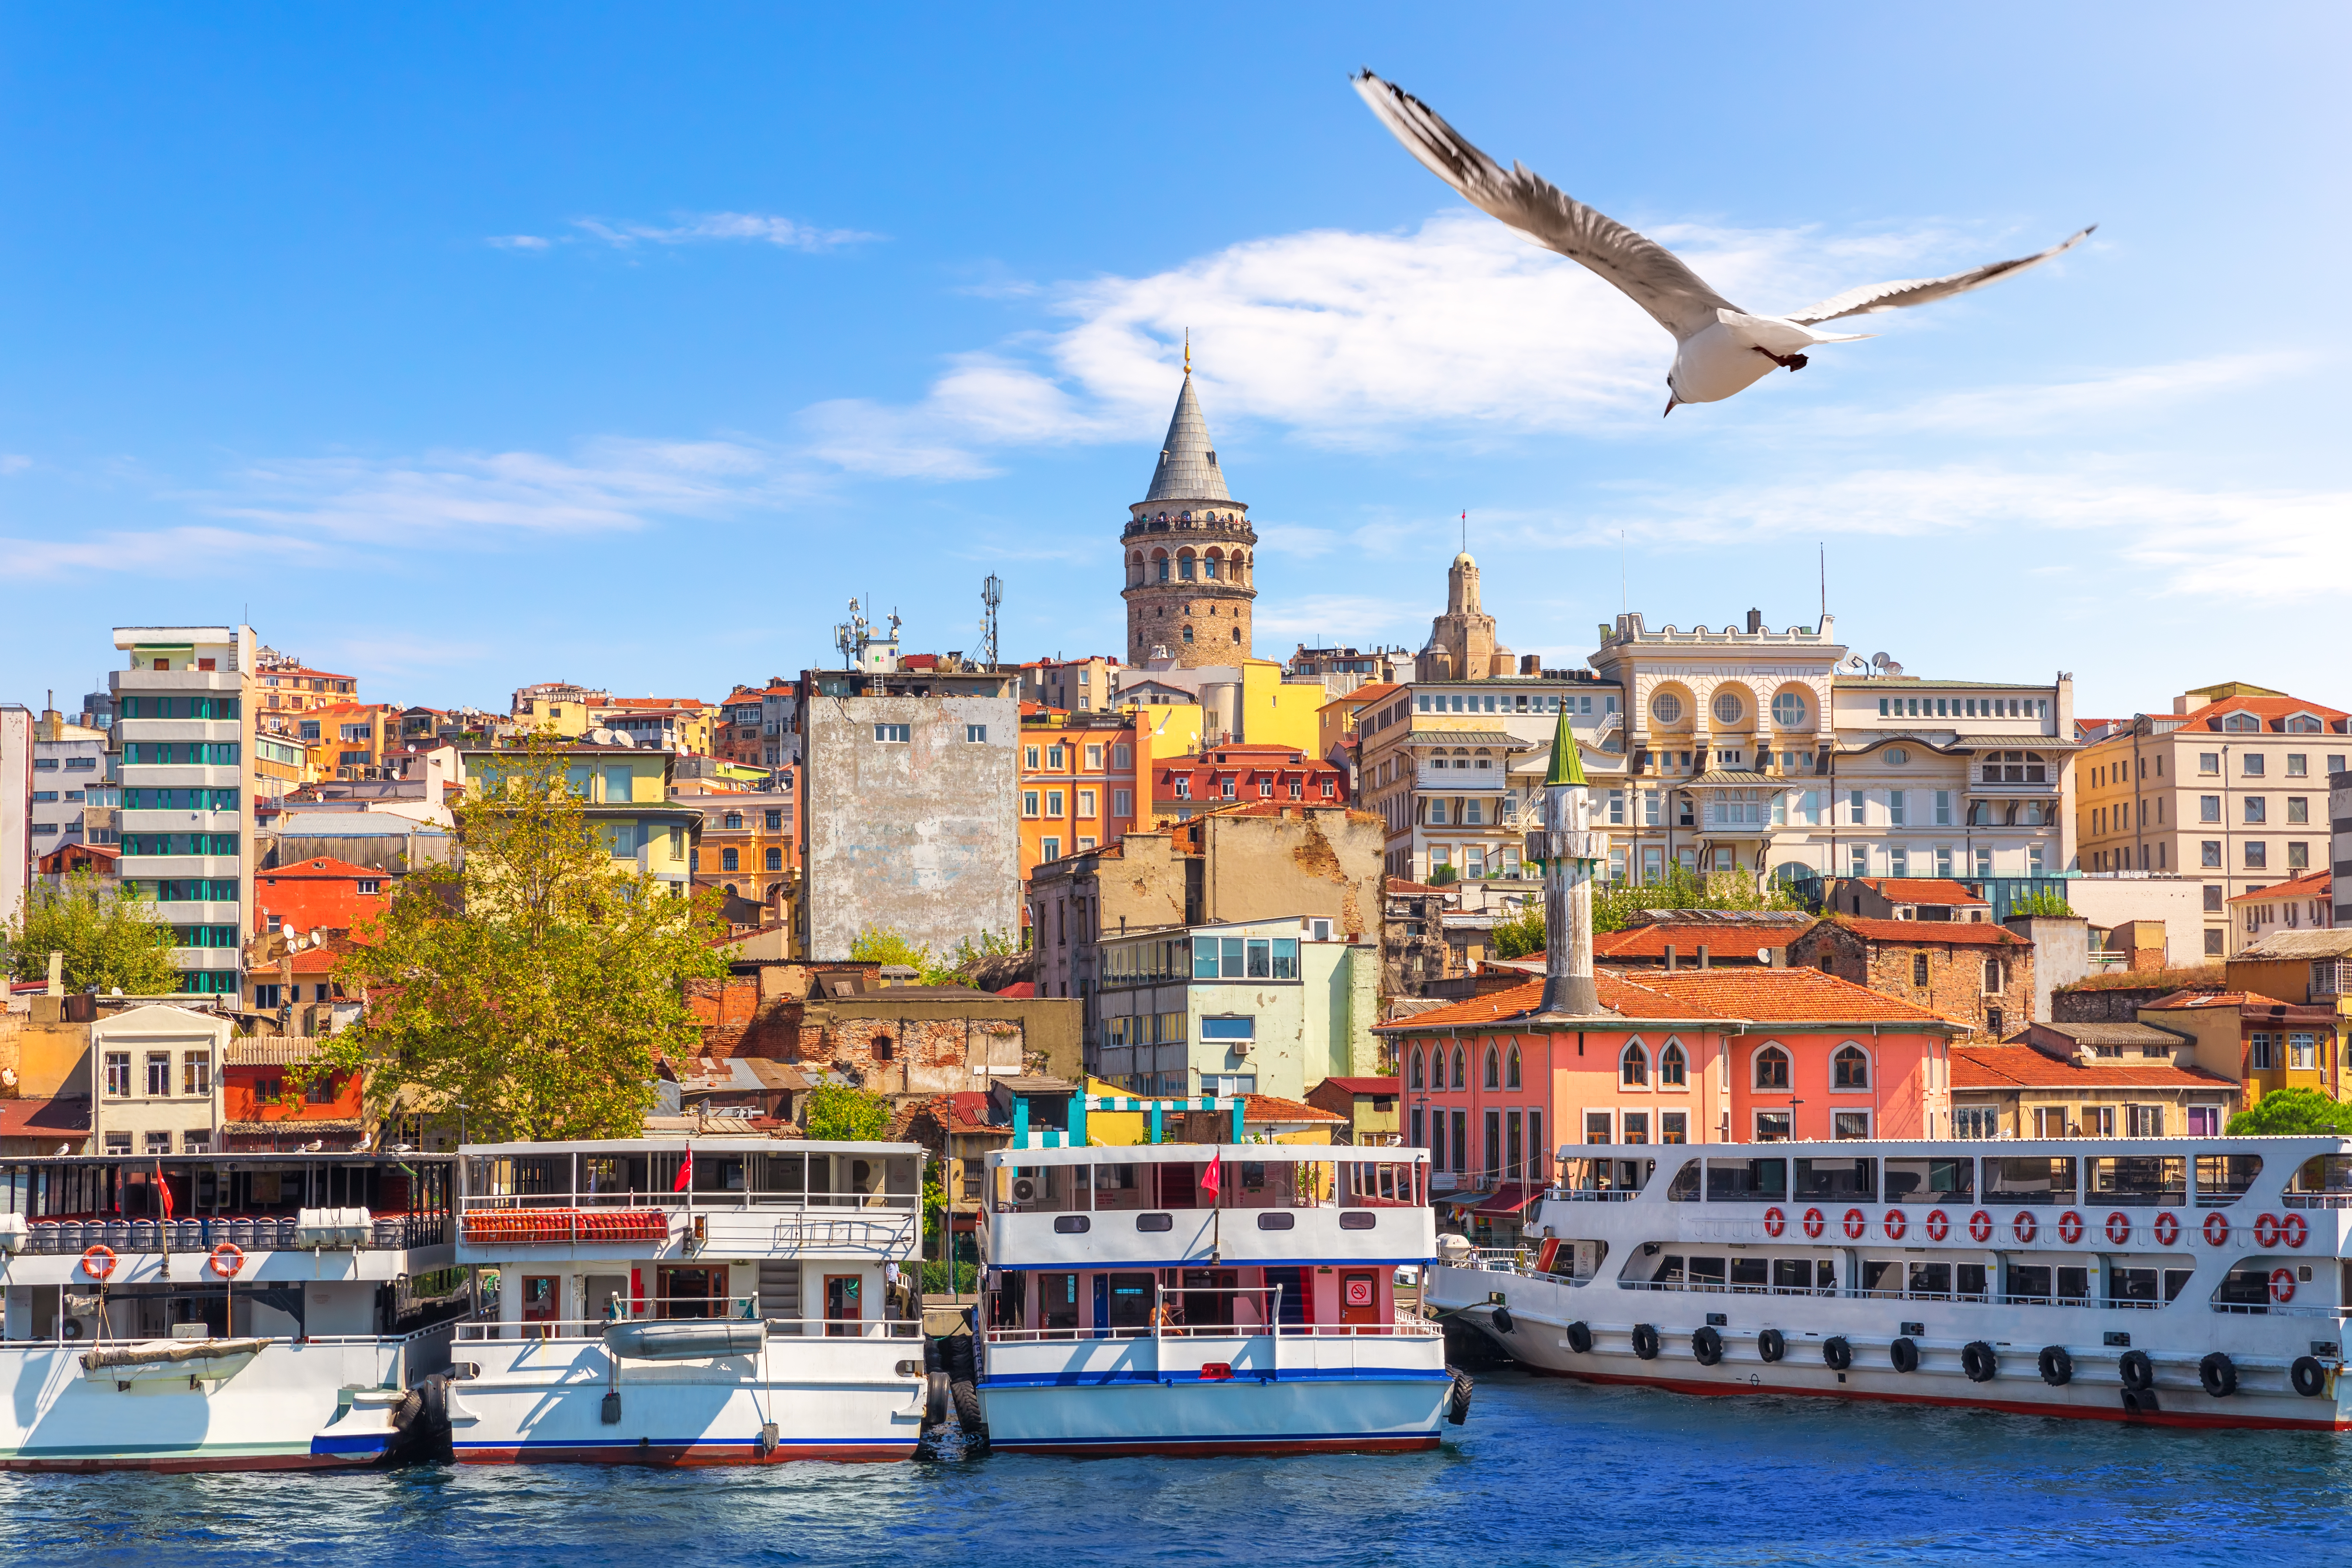 ما يجب عليك فعله قبل الانتقال لمدينة اسطنبول